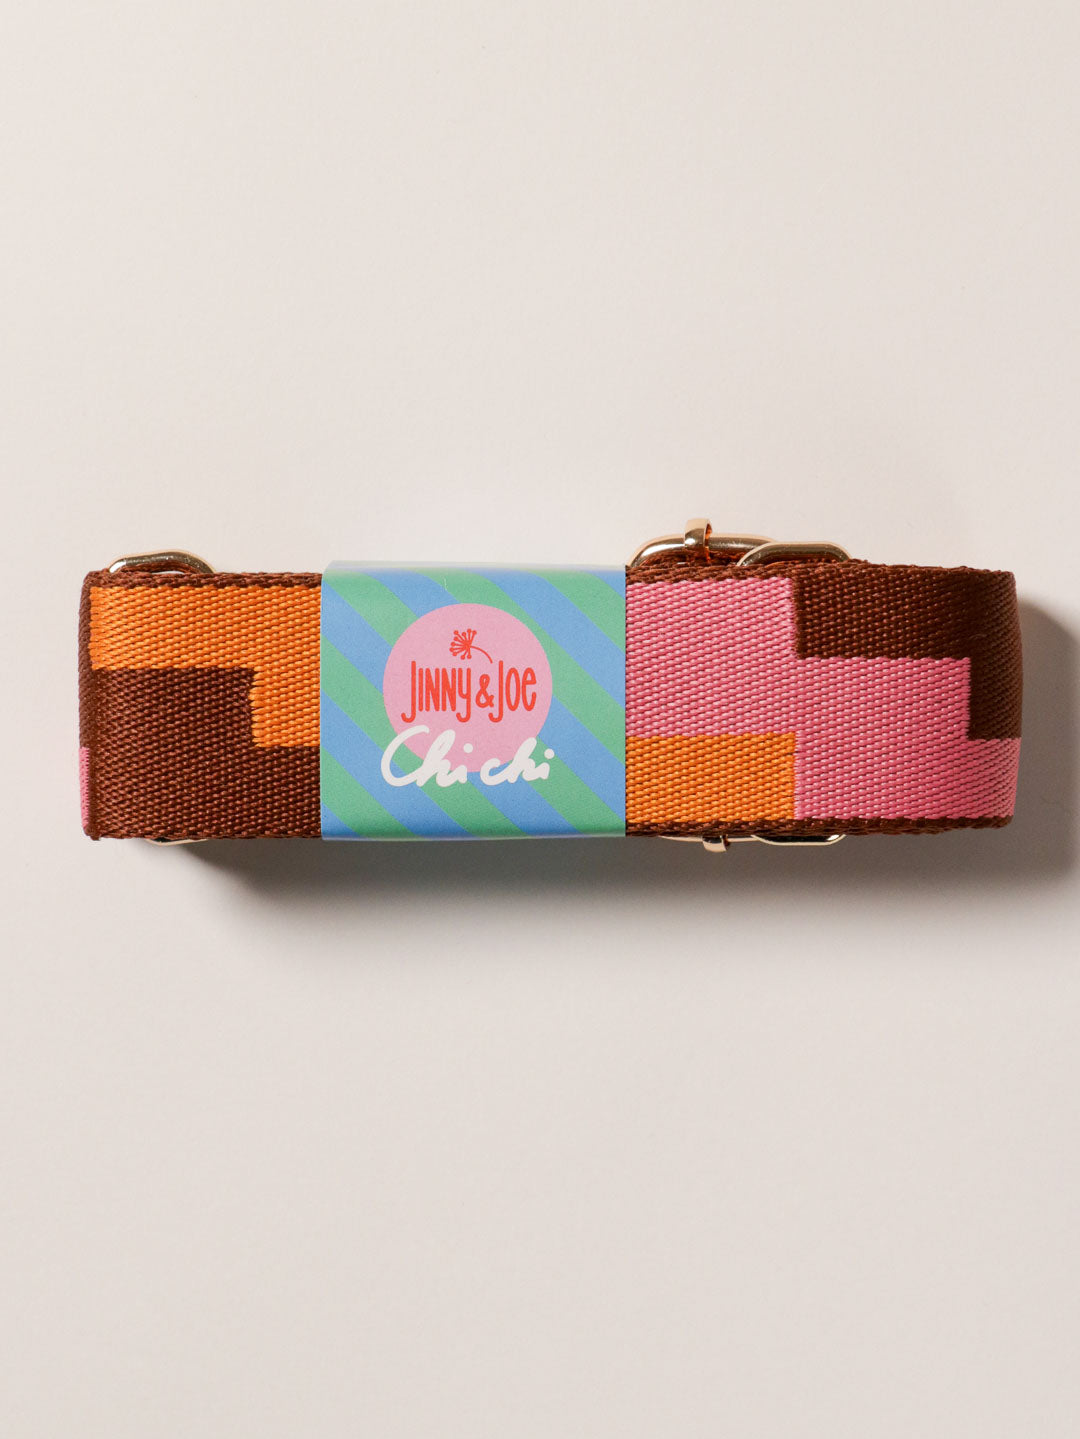 J&J Taschengurt Blocks Braun Orange Pink